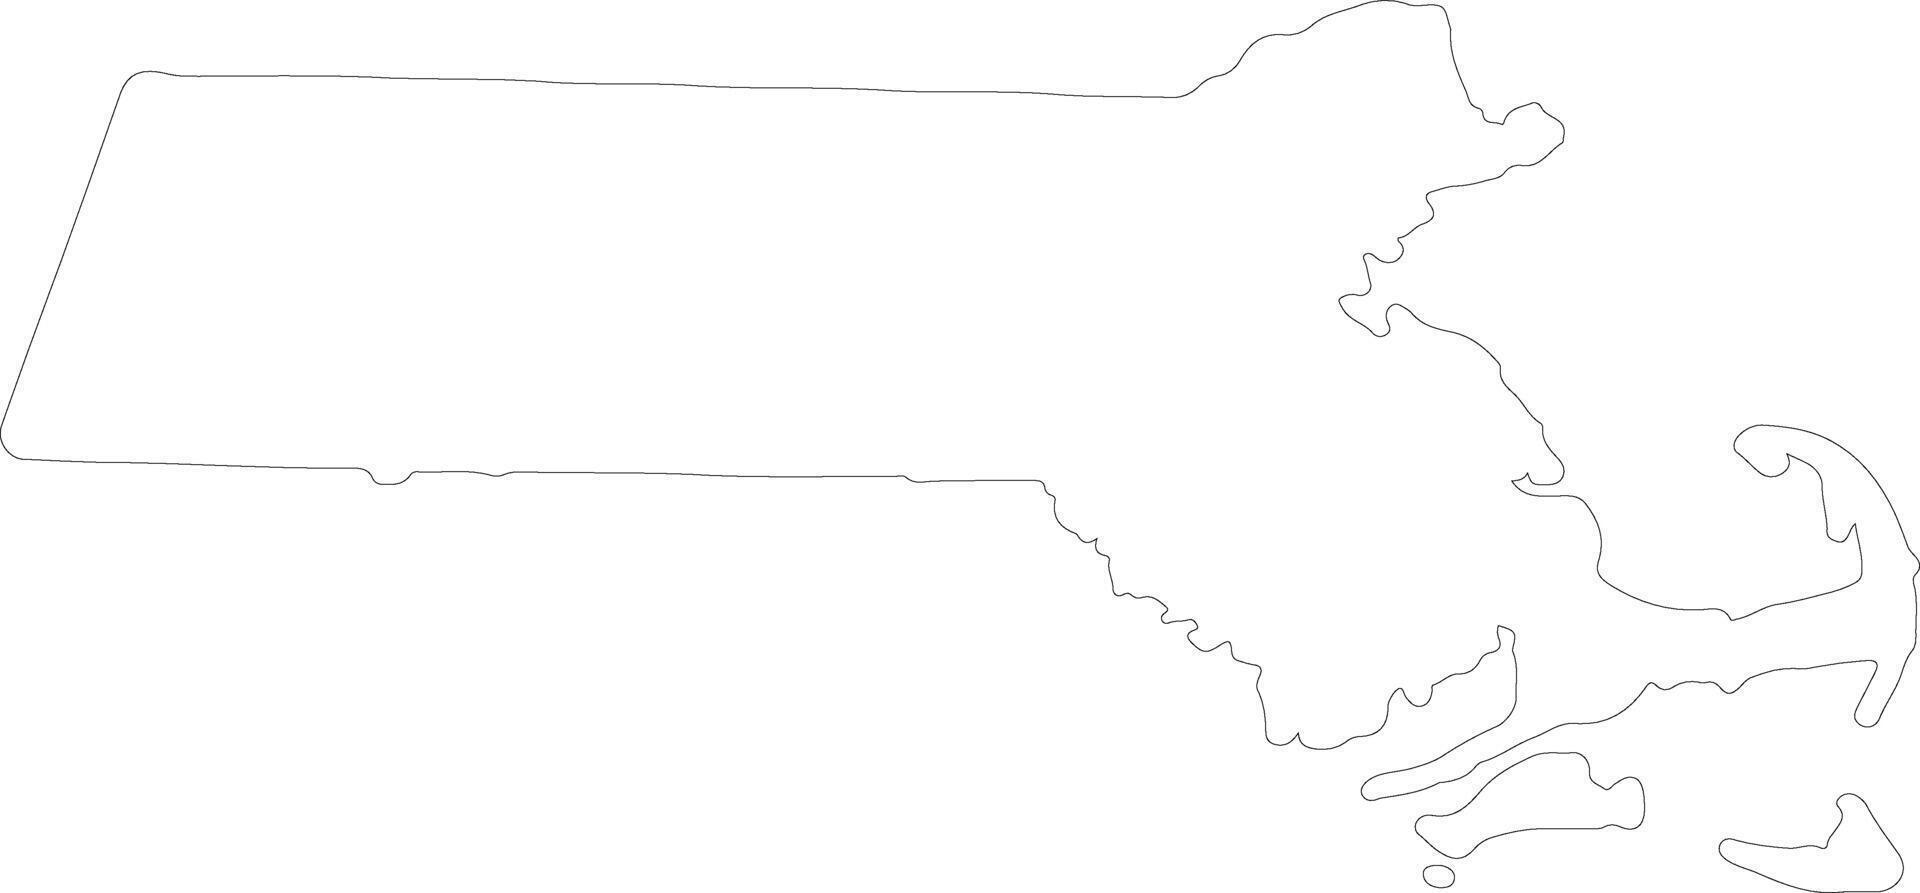 Massachusetts Unidos estados do América esboço mapa vetor